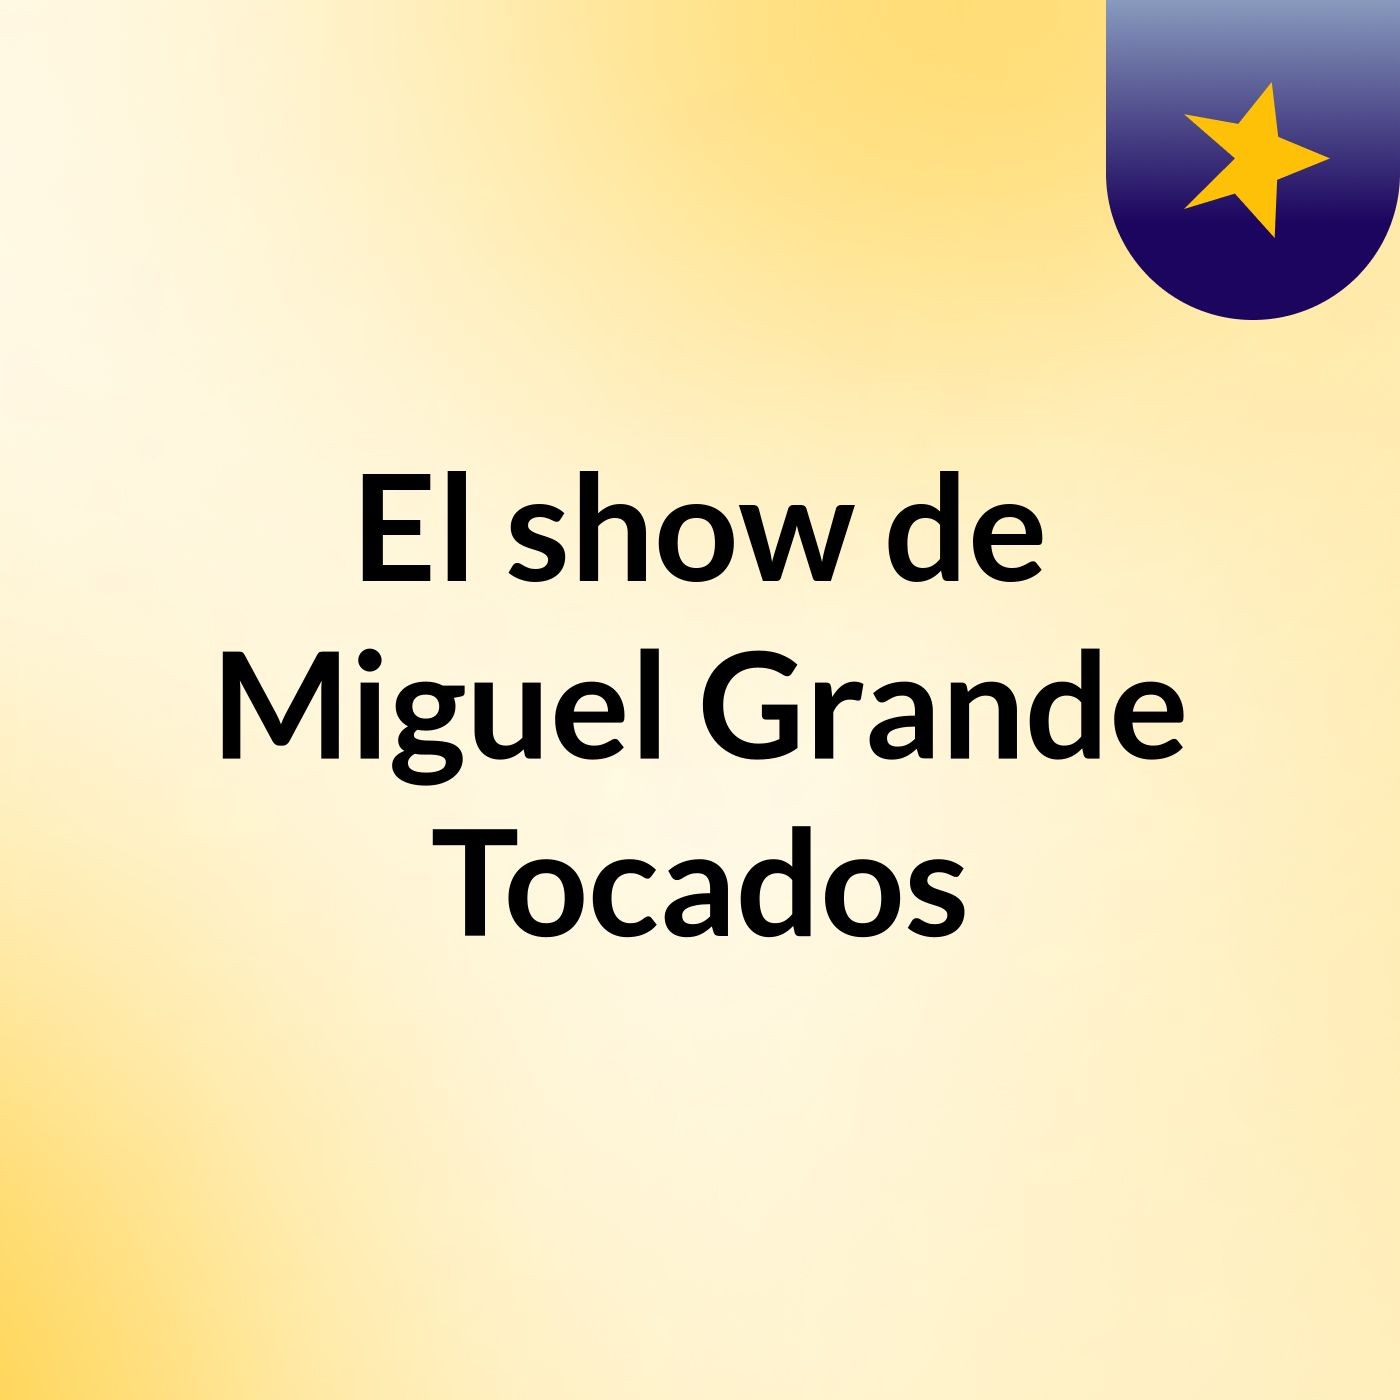 El show de Miguel Grande Tocados